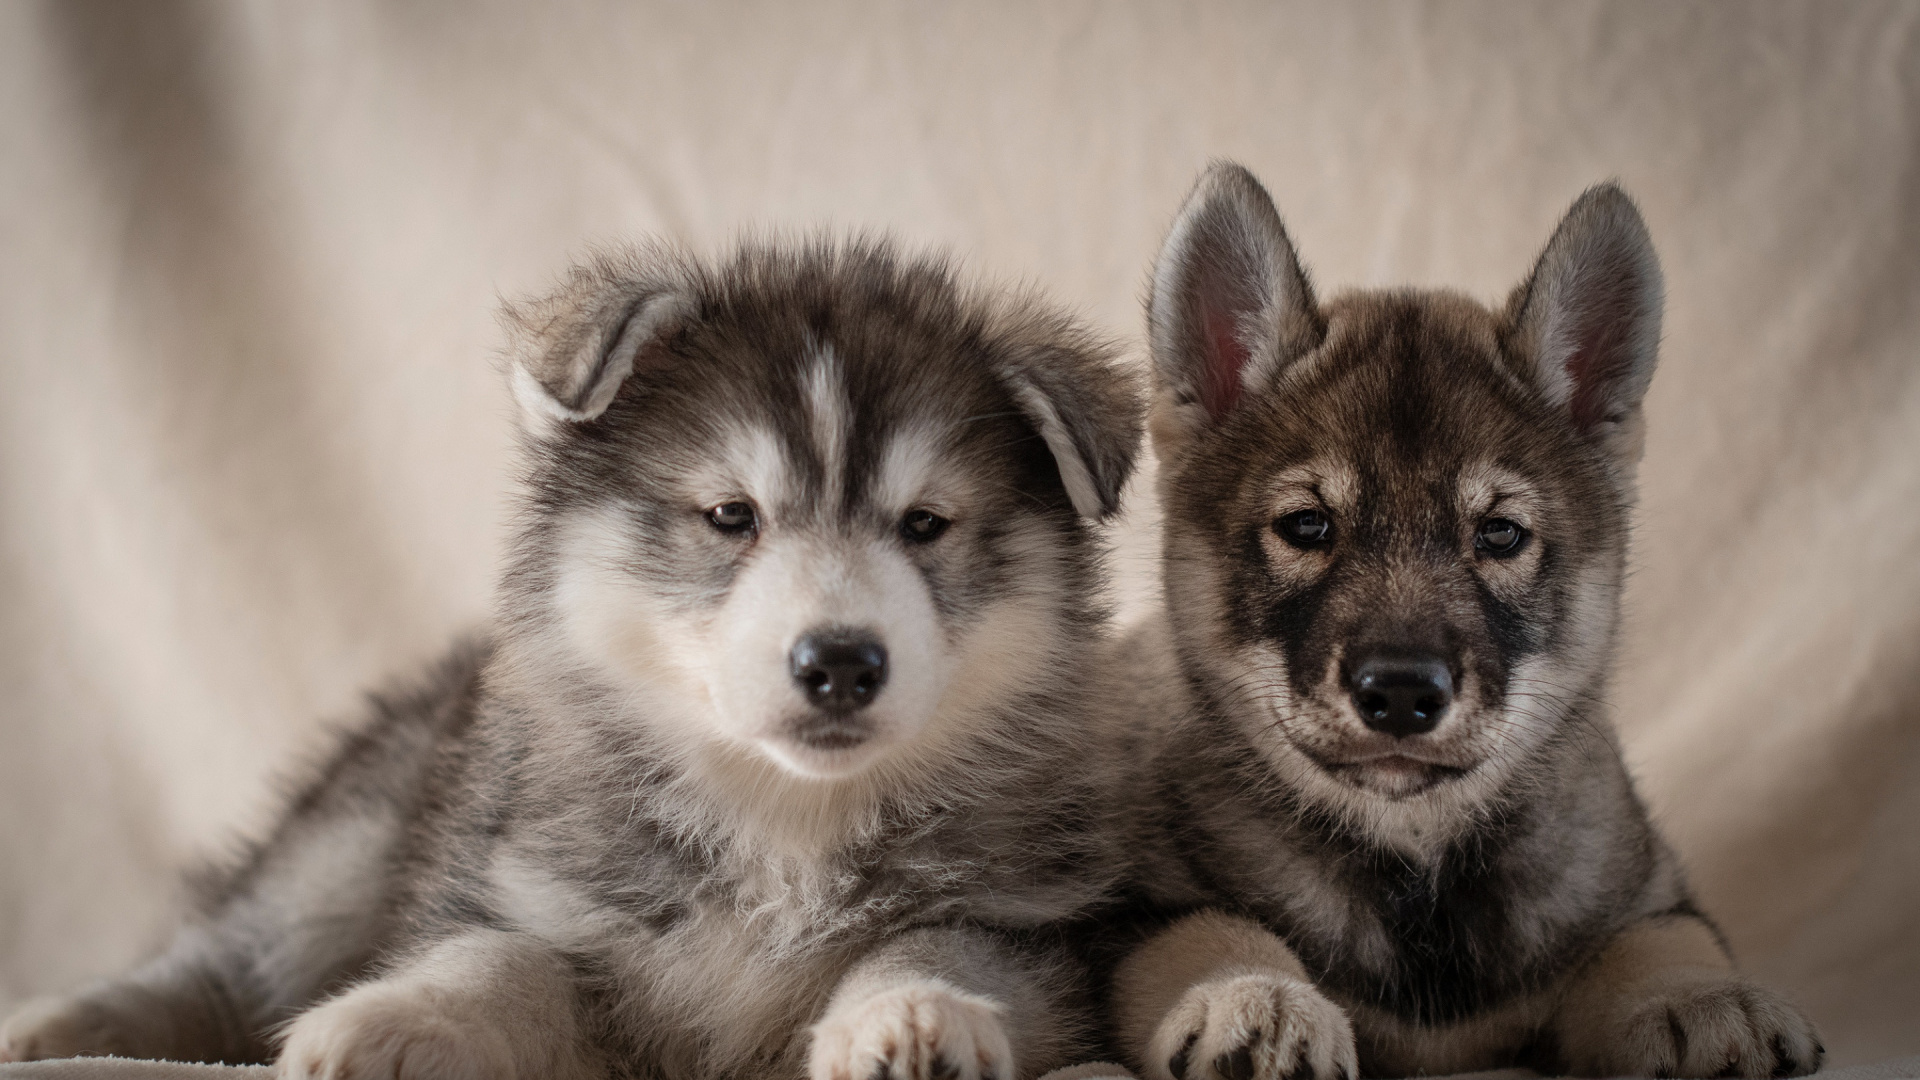 小狗, 阿拉斯加雪橇犬, 品种的狗, 萨哈林赫斯基, Saarloos那只狼狗 壁纸 1920x1080 允许